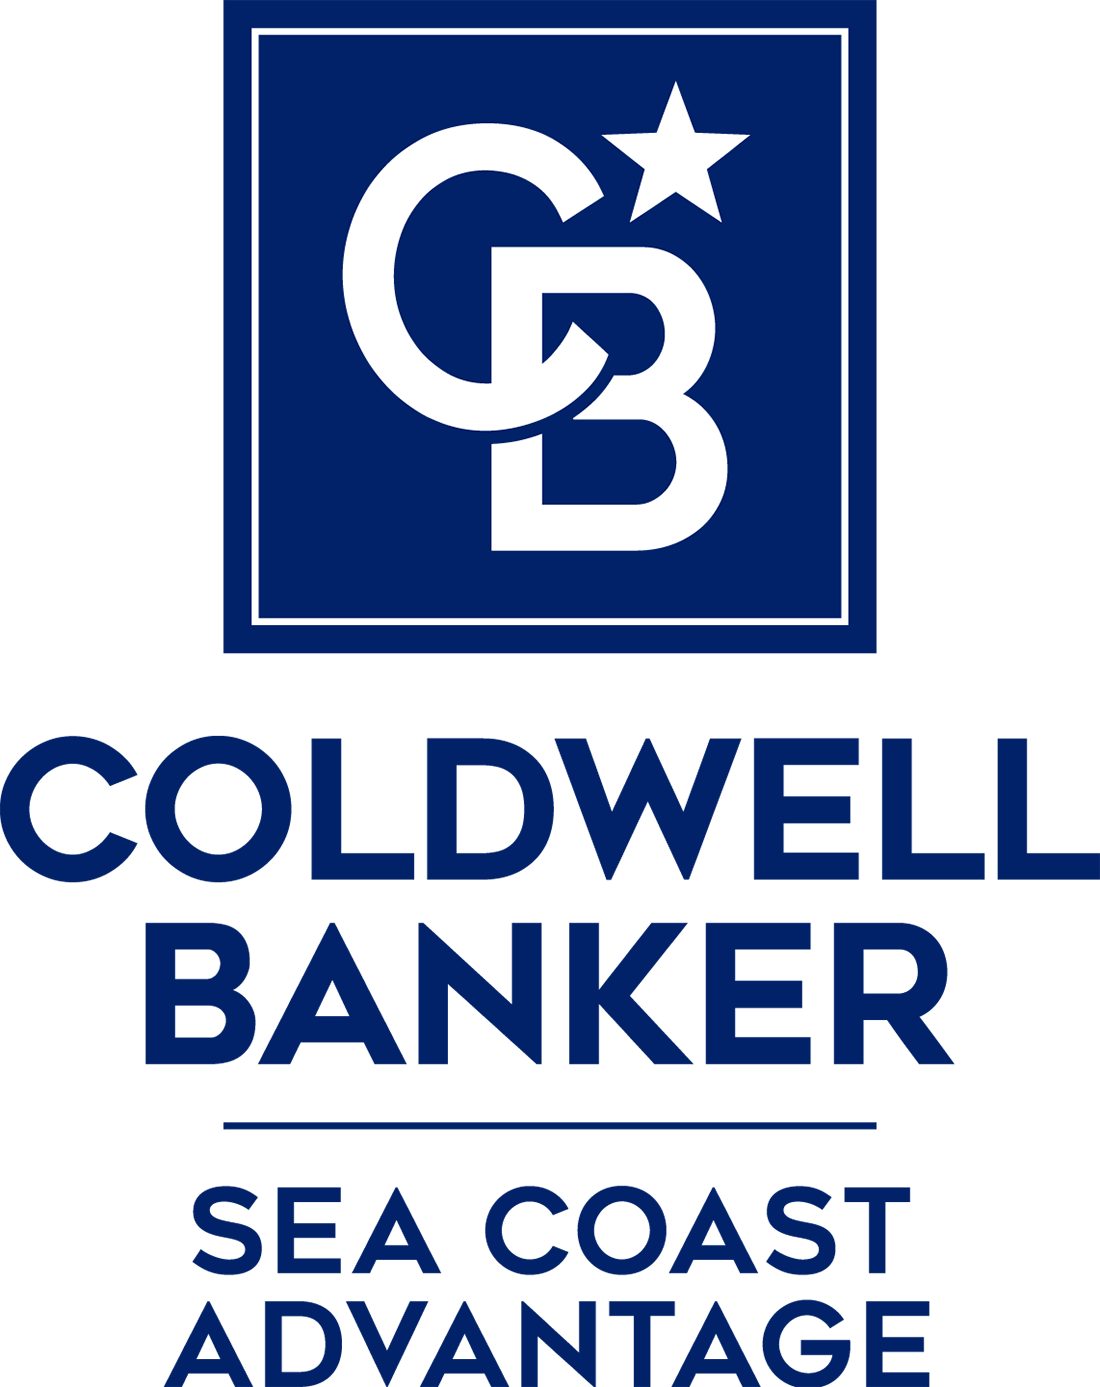 Wayne Rouse - Coldwell Banker Sea Coast Advantage Realty Logo